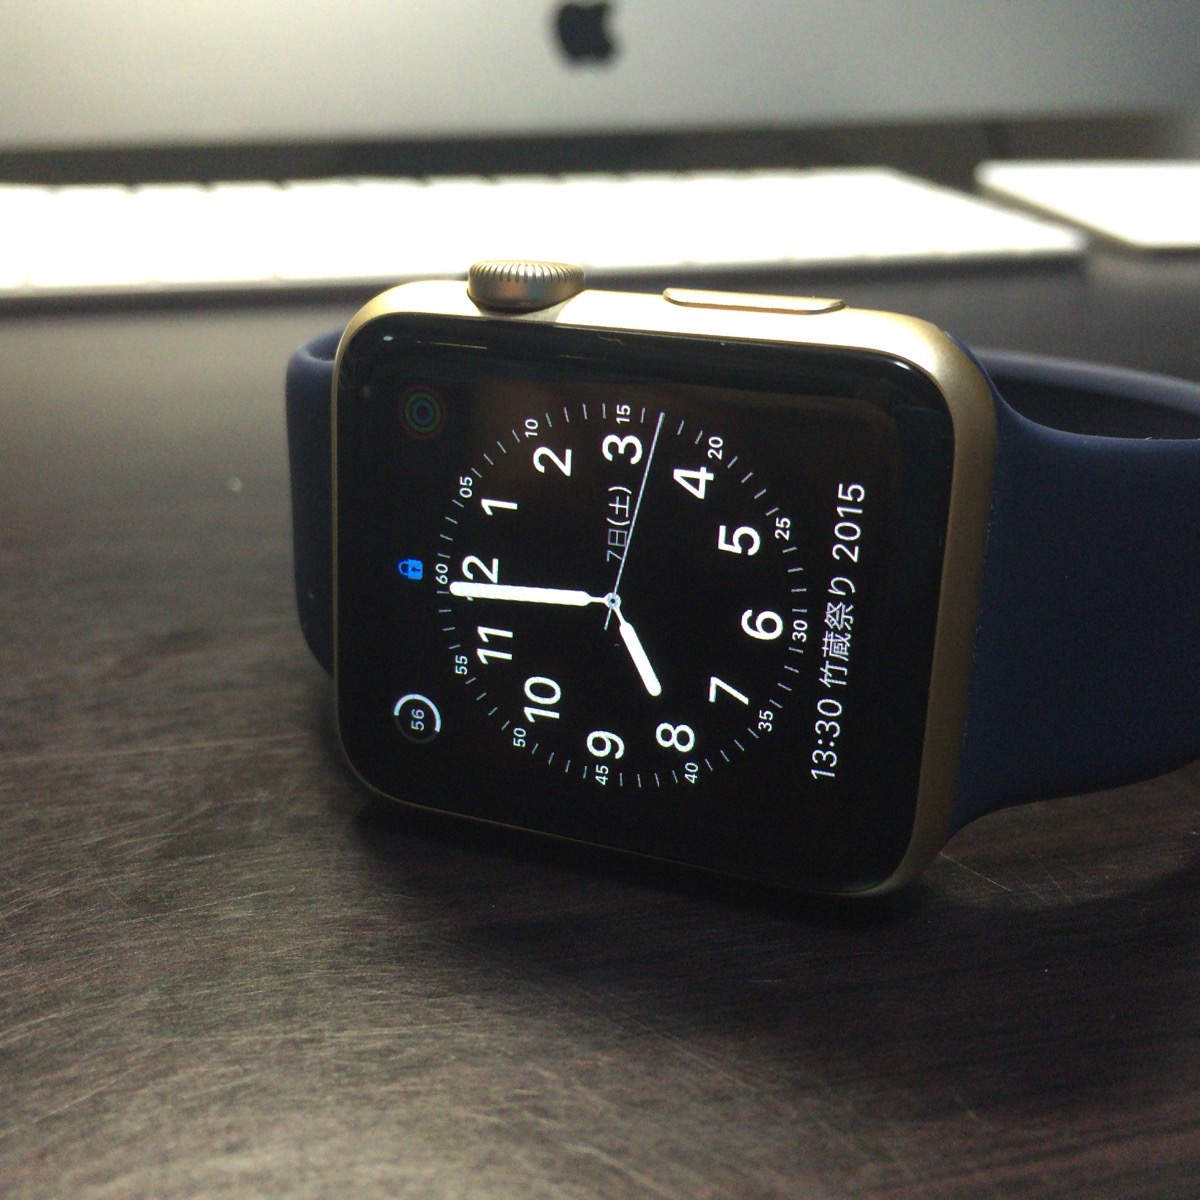 [Apple]「Apple Watch」のお気に入りの文字盤にはこんな情報を表示してカスタマイズしてますよ